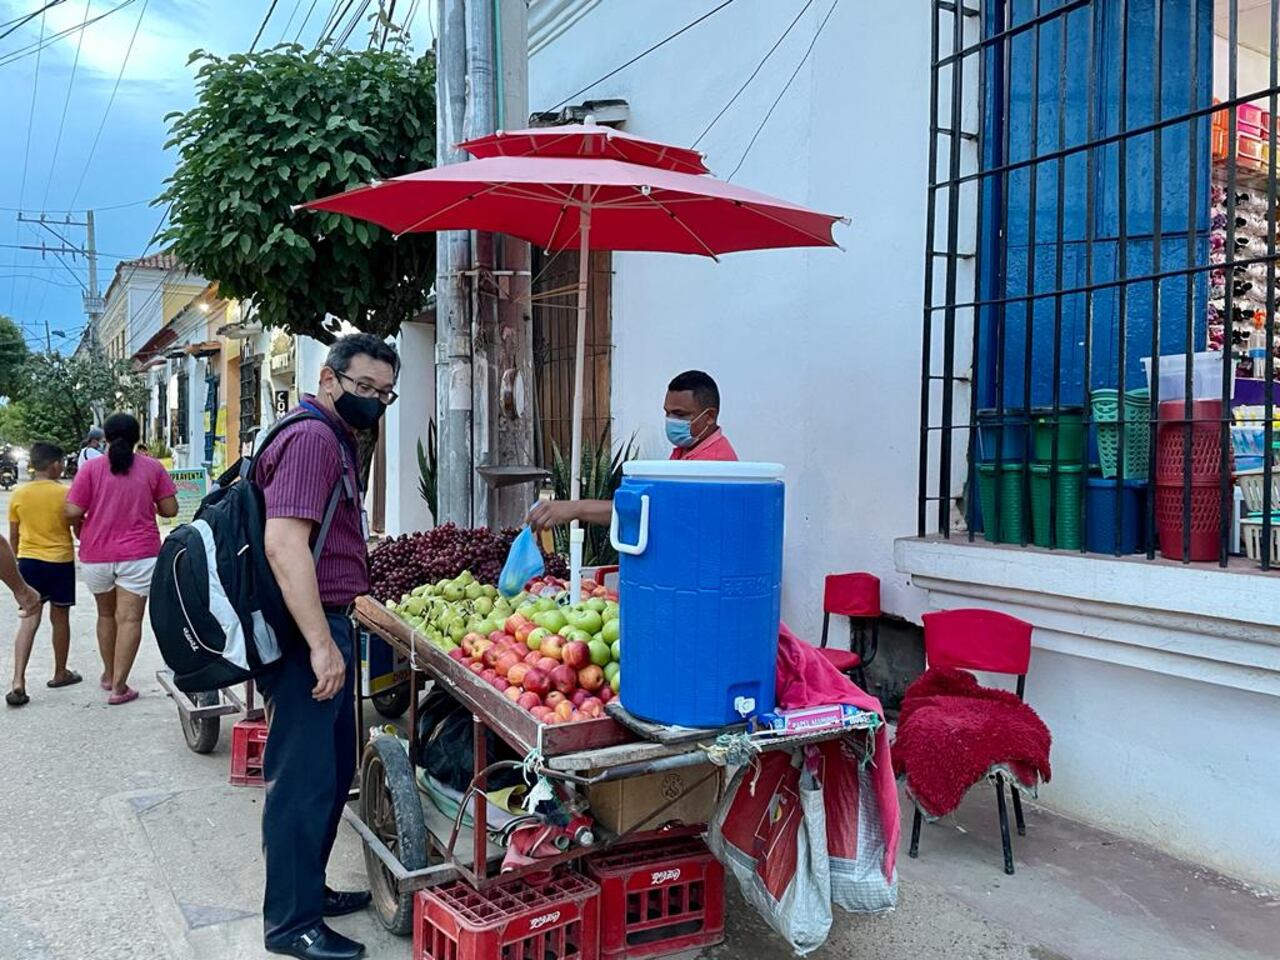 La informalidad, es una de las modalidades de trabajo más recurrentes en Santa Cruz de Mompox, y mientras el gobierno busca formalizarlos, los ciudadanos siguen en el ''rebusque'' todos los días. Foto: Andrea Gómez